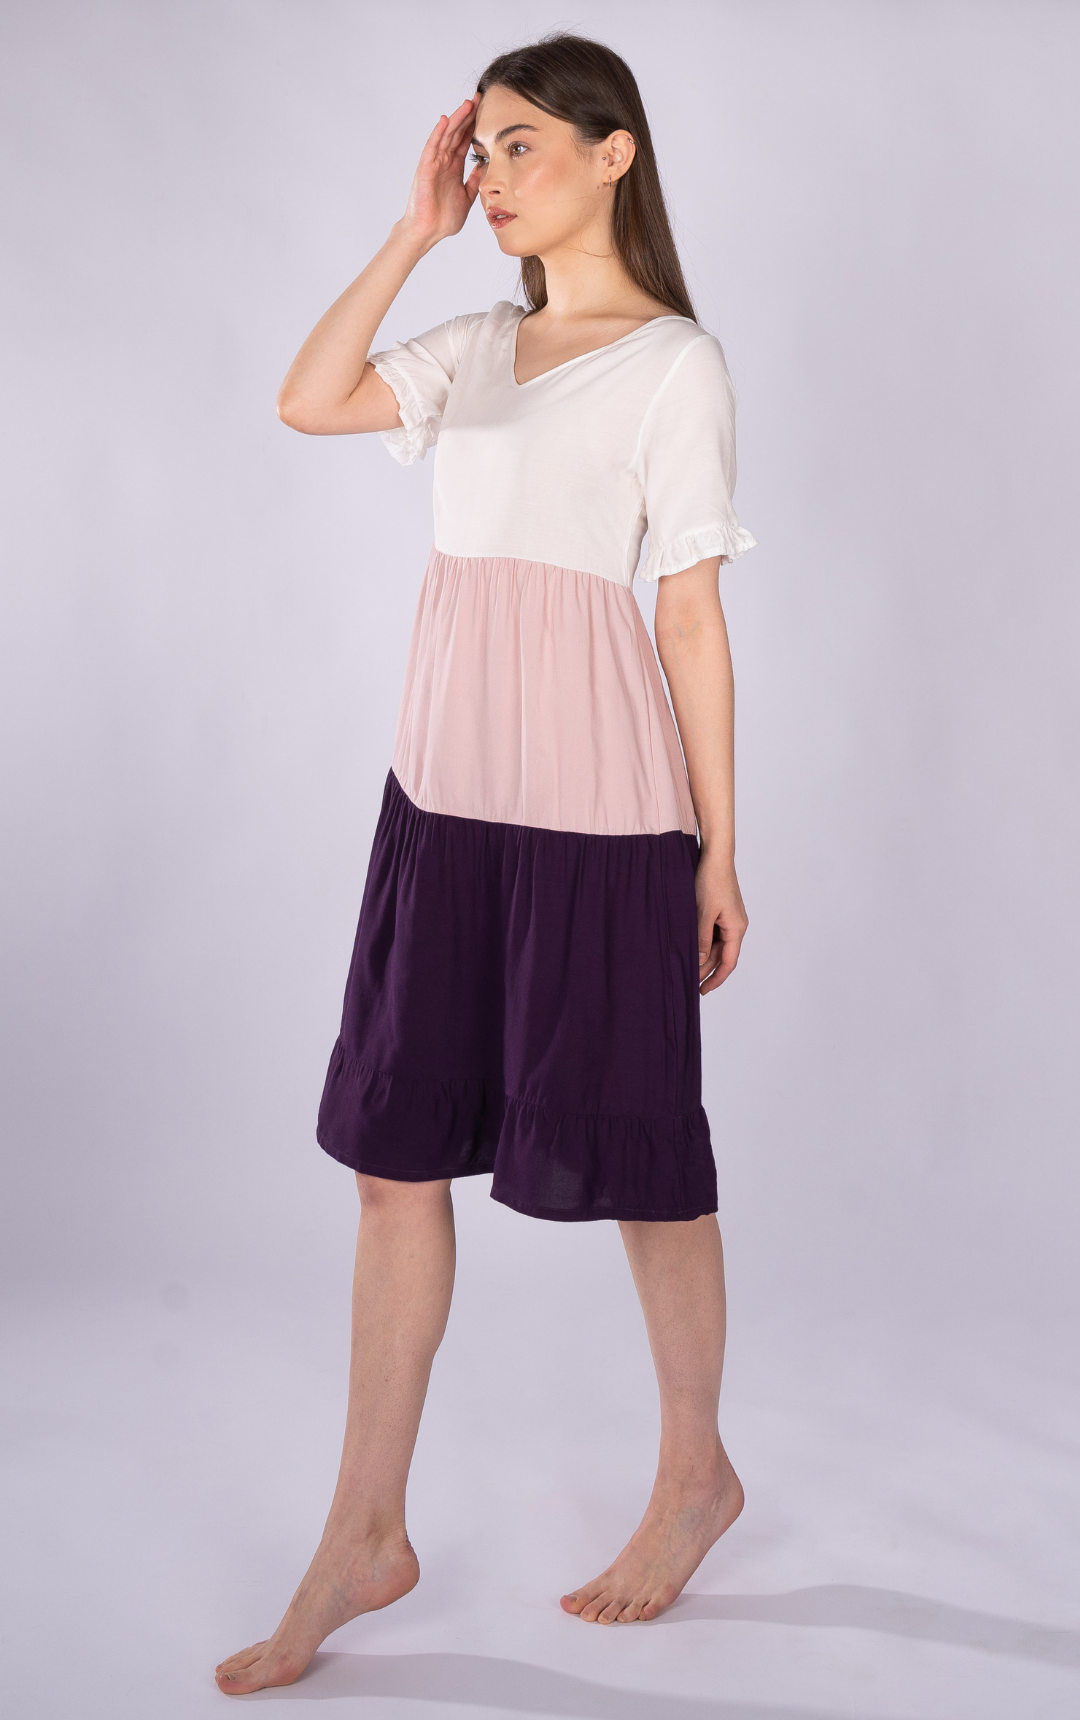 Summer Short-Sleeve Home Dress